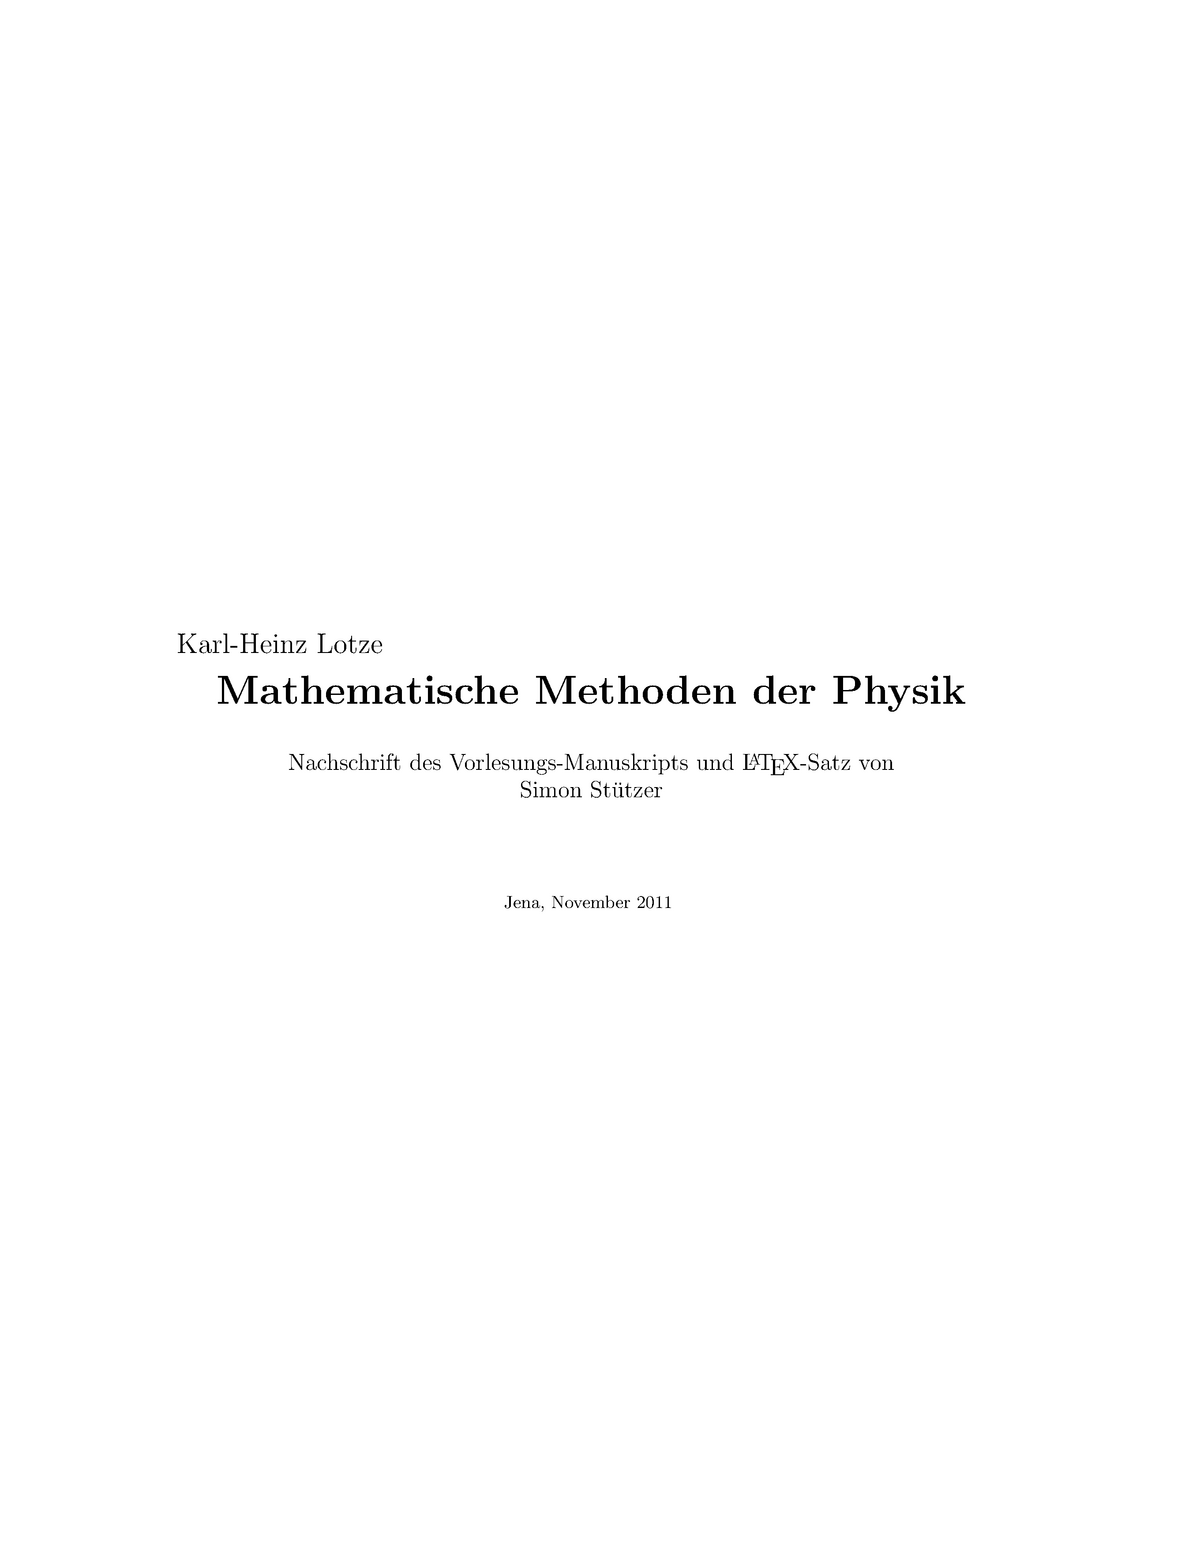 mathematische methoden der physik eth